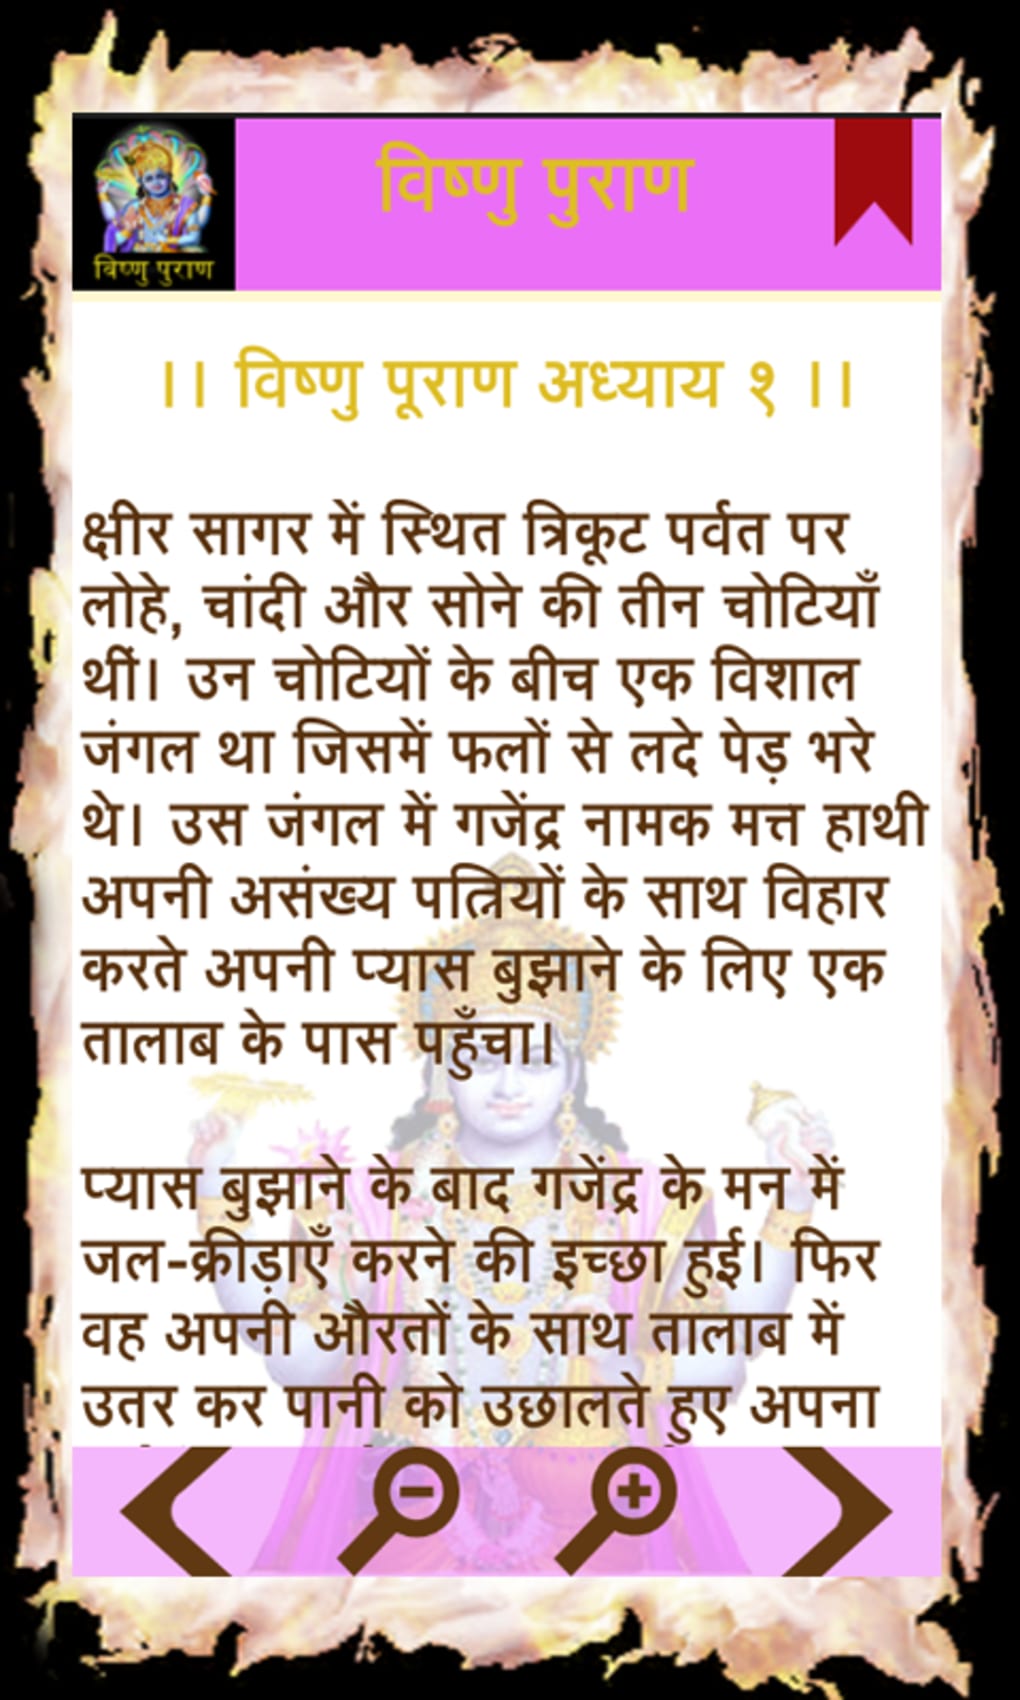 Vishnu Puran in Hindi APK for Android - Download